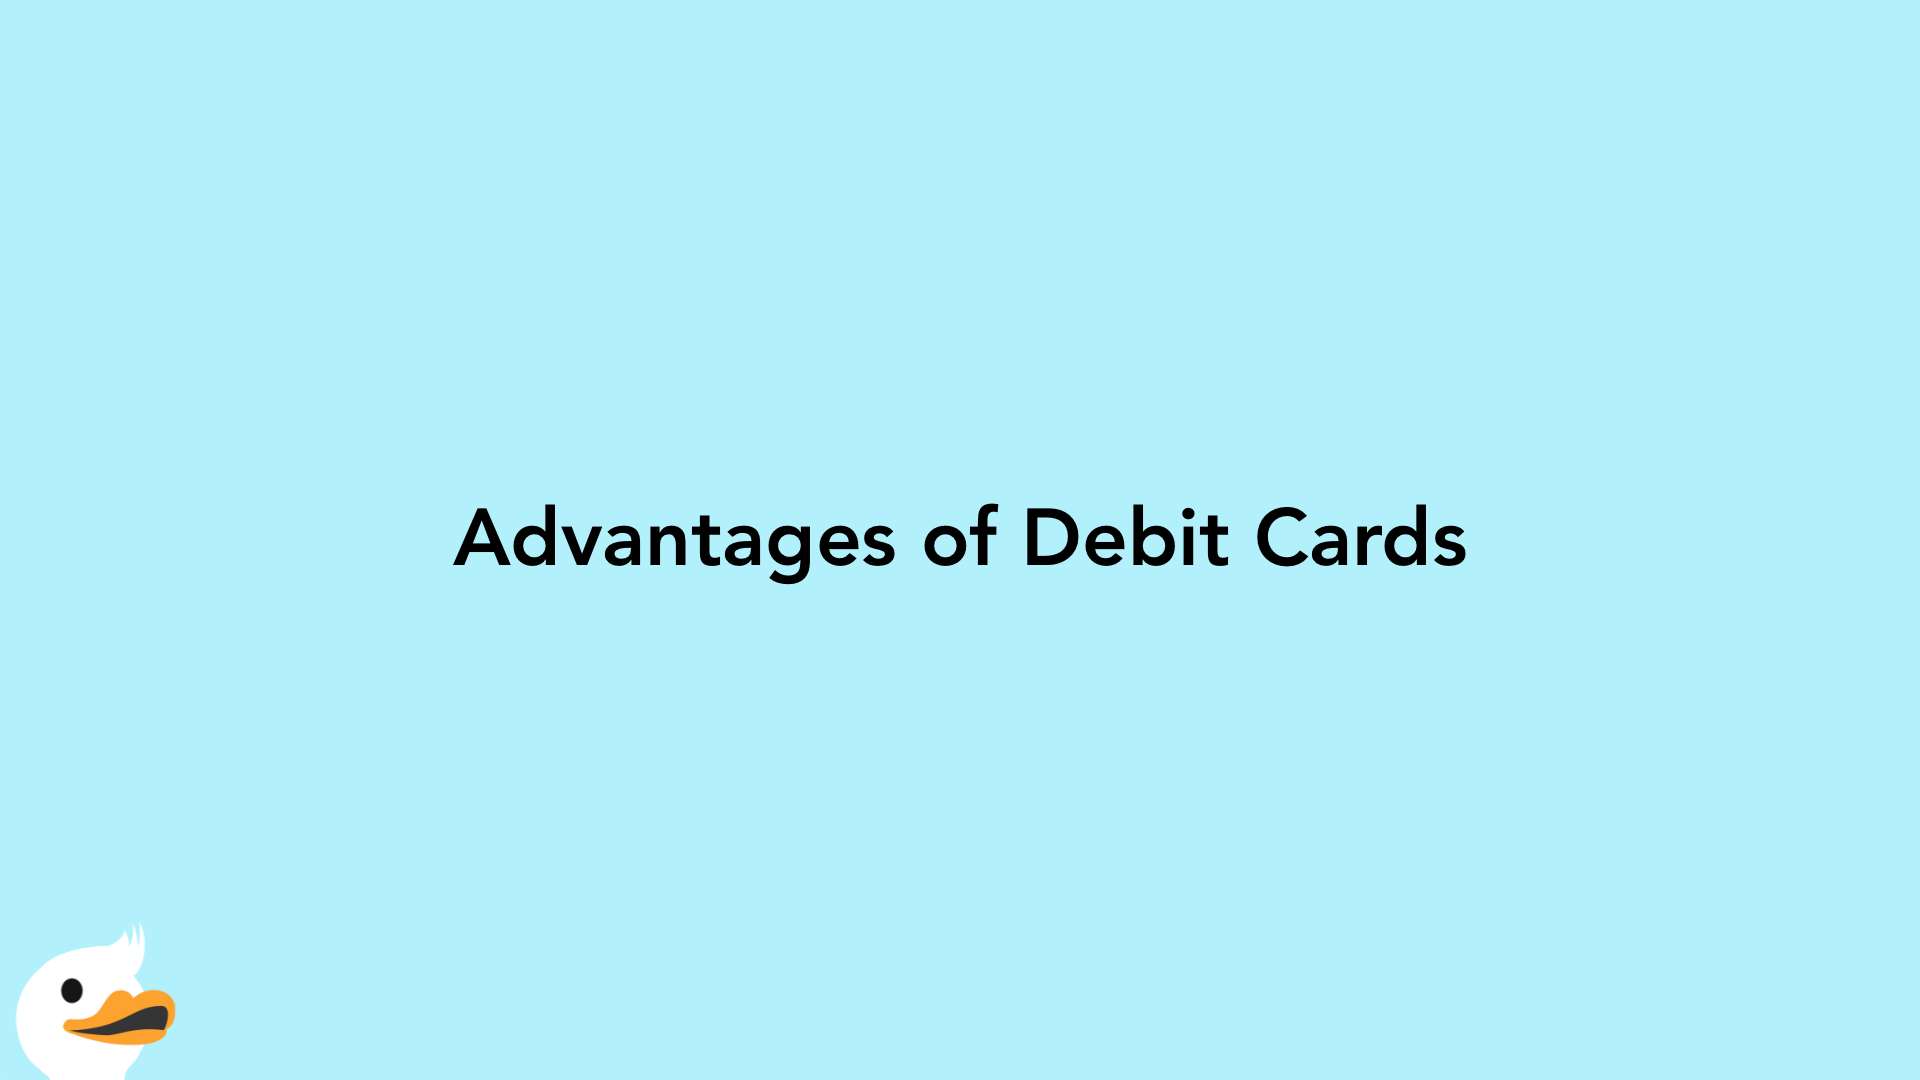 Advantages of Debit Cards